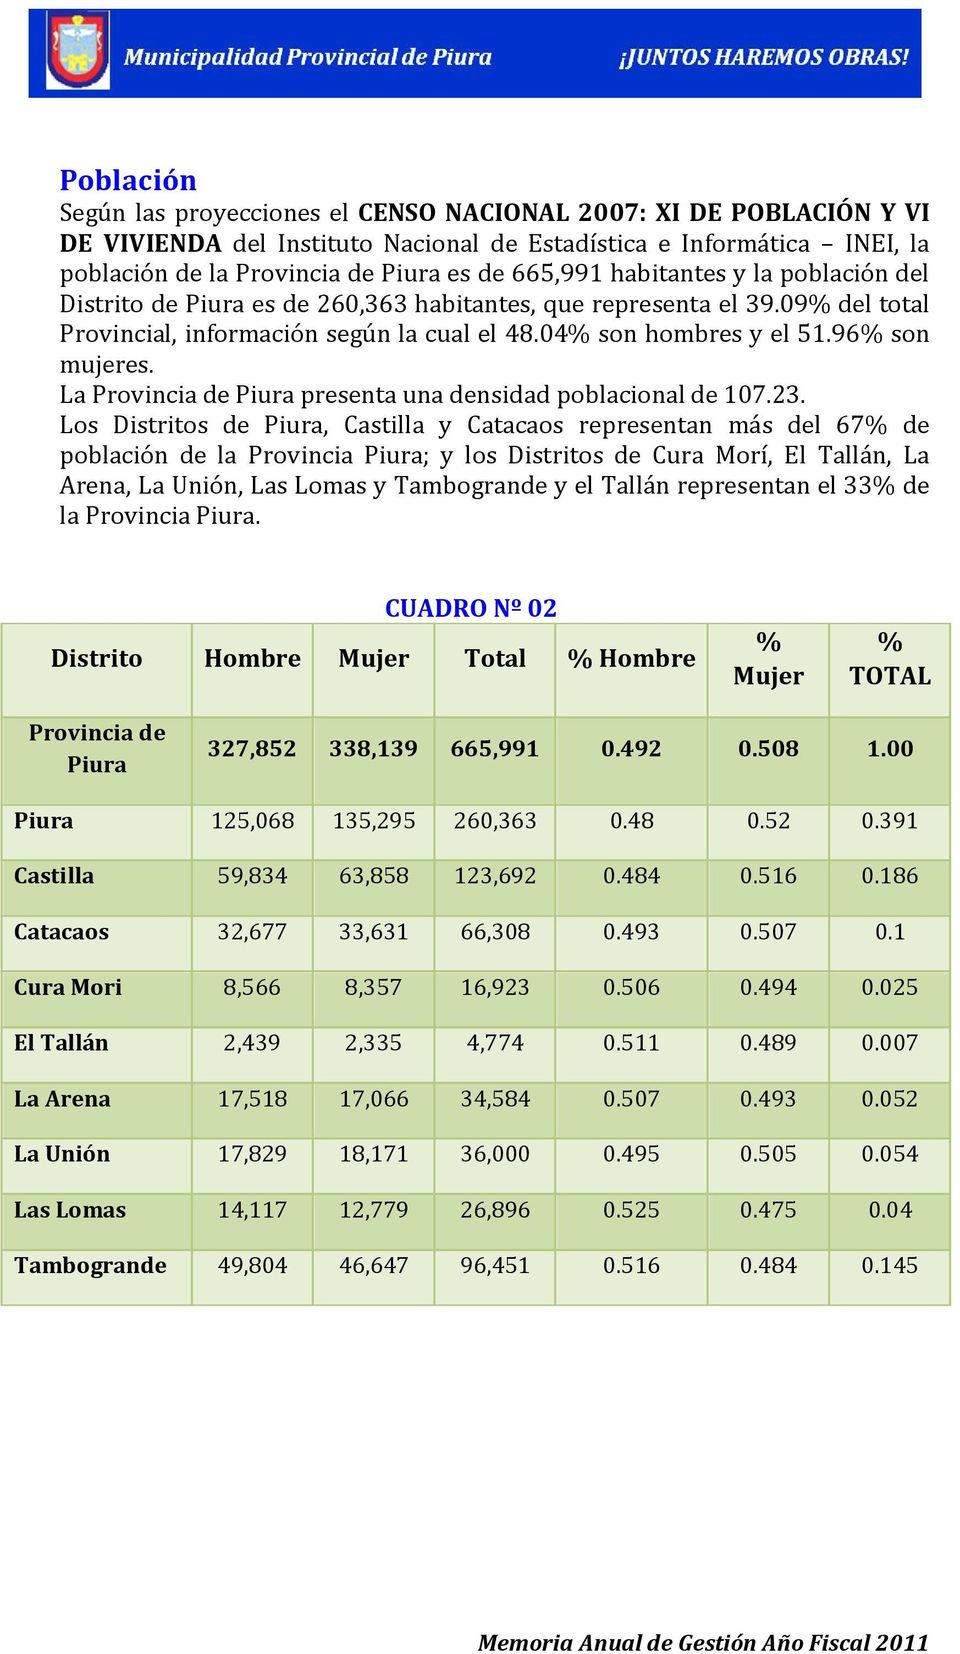 La Provincia de Piura presenta una densidad poblacional de 107.23.